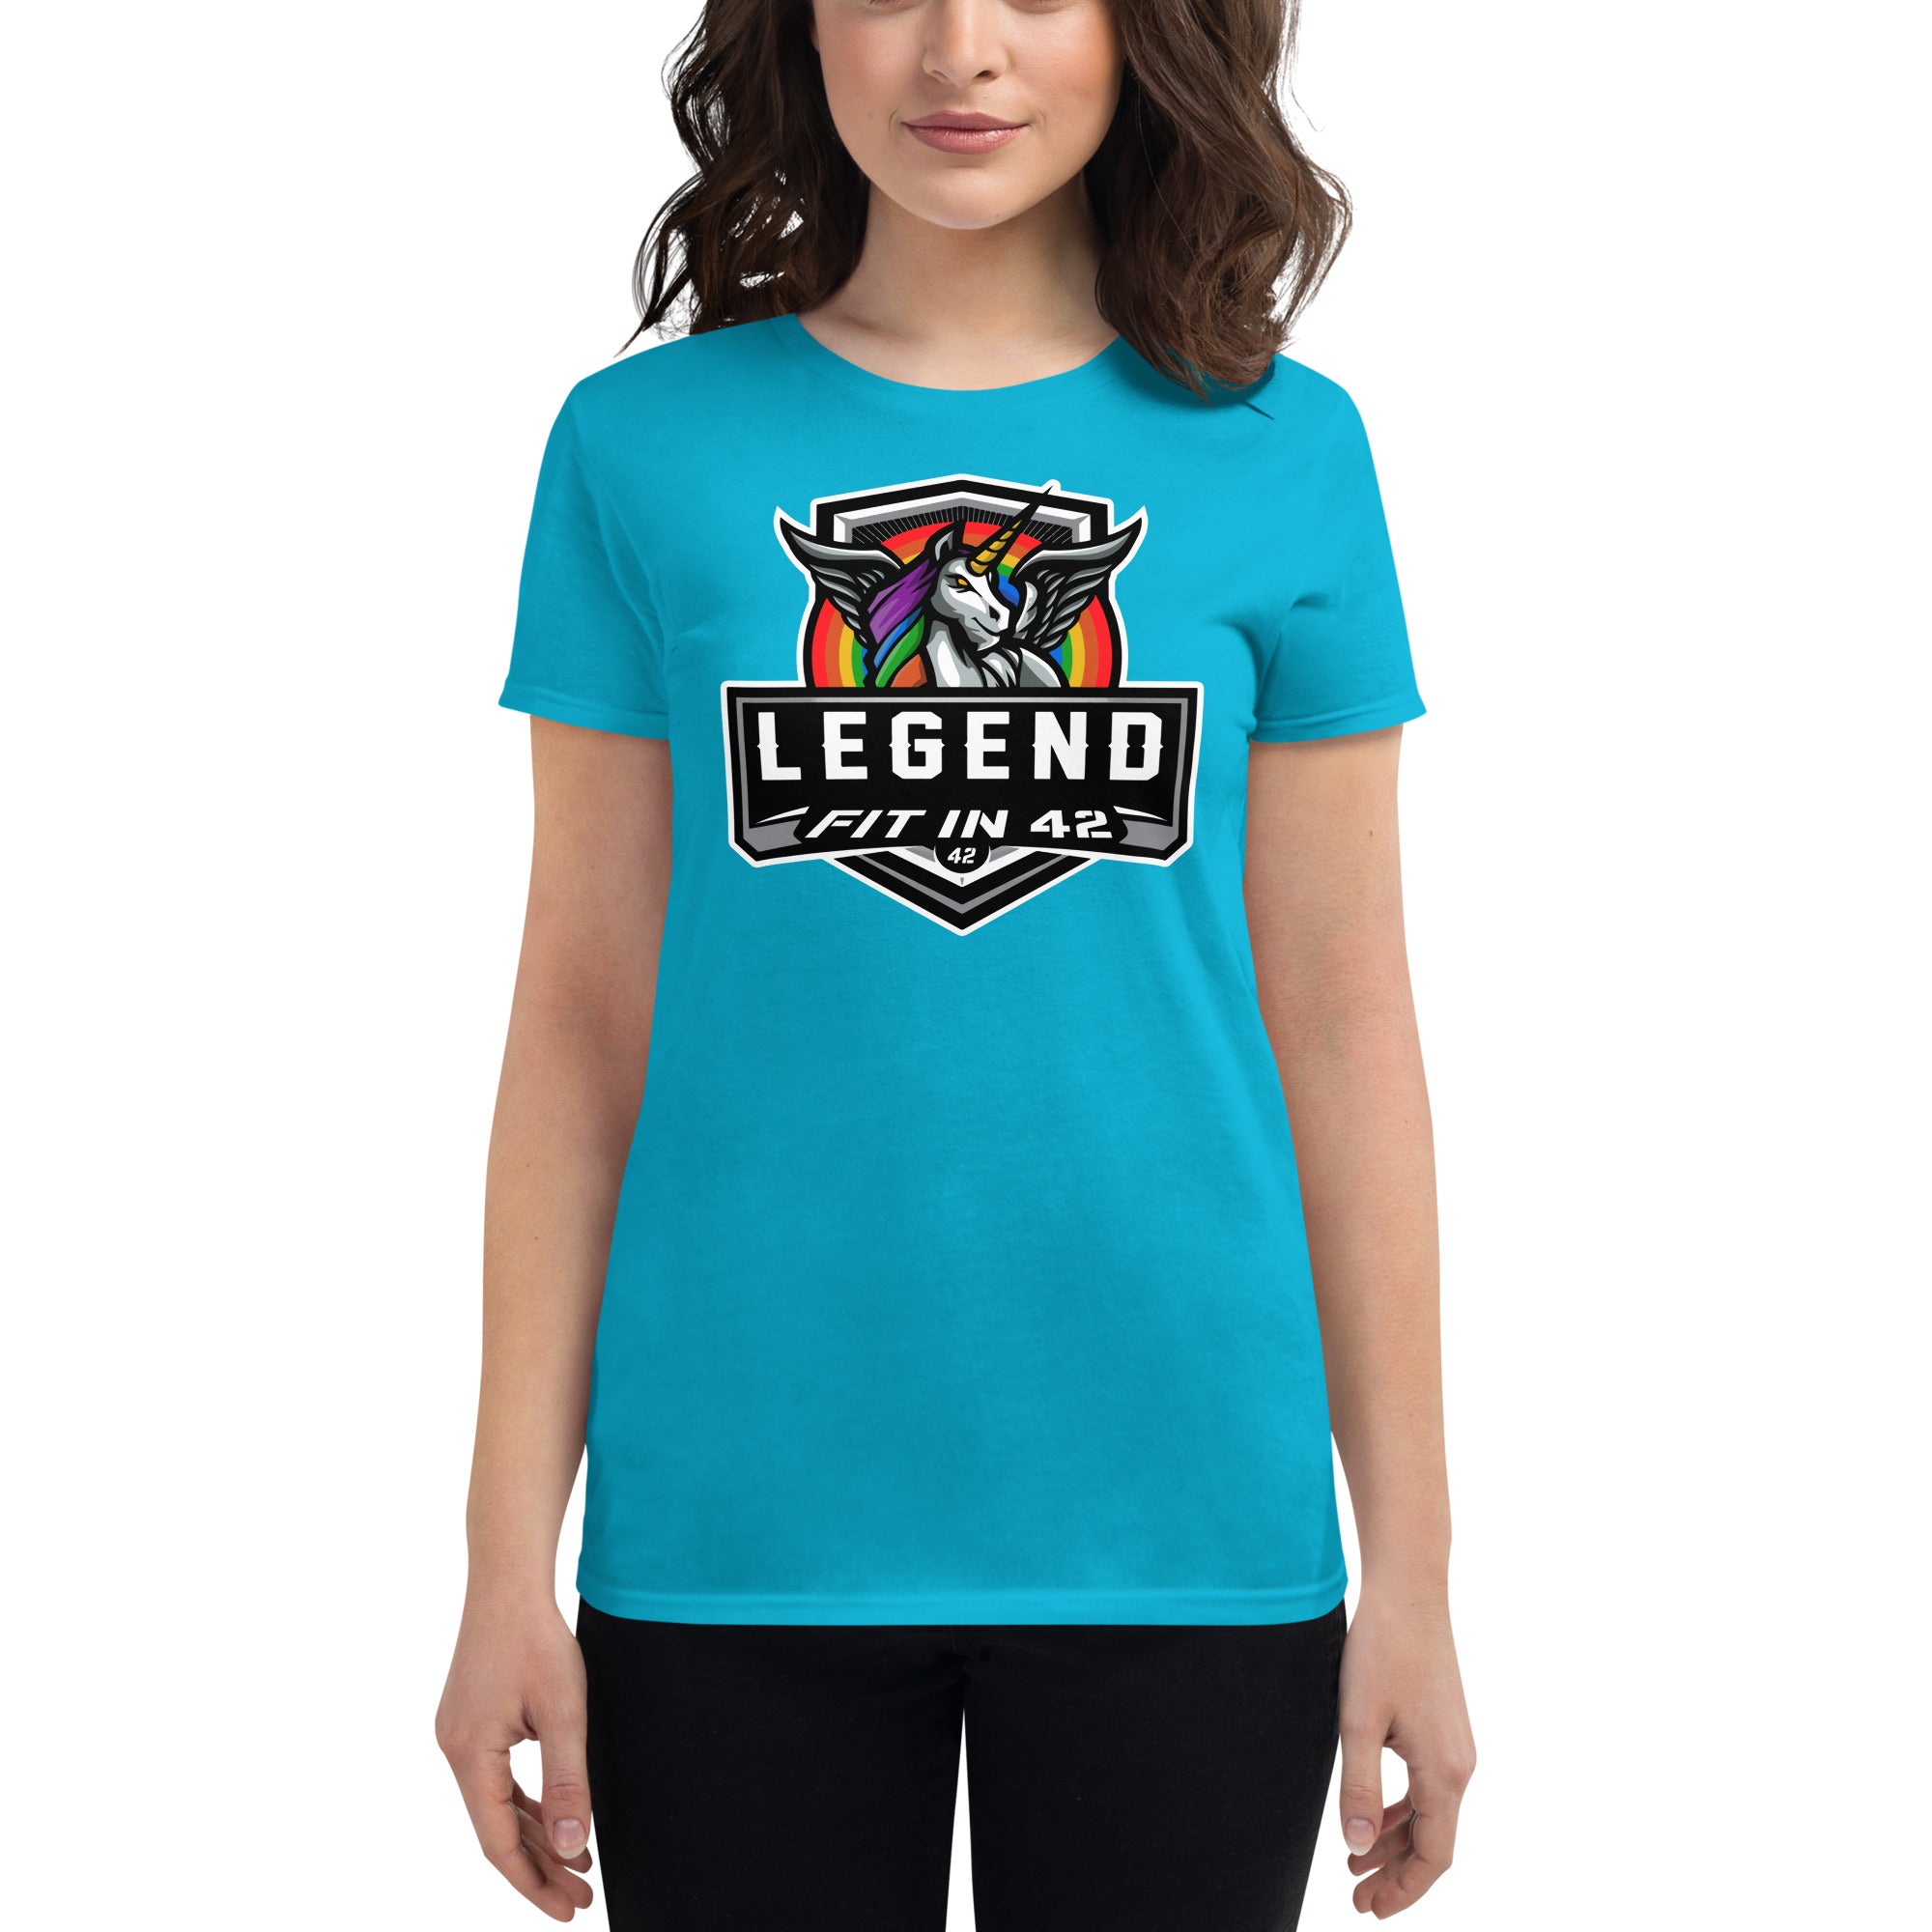 Legend Women's short sleeve t-shirt